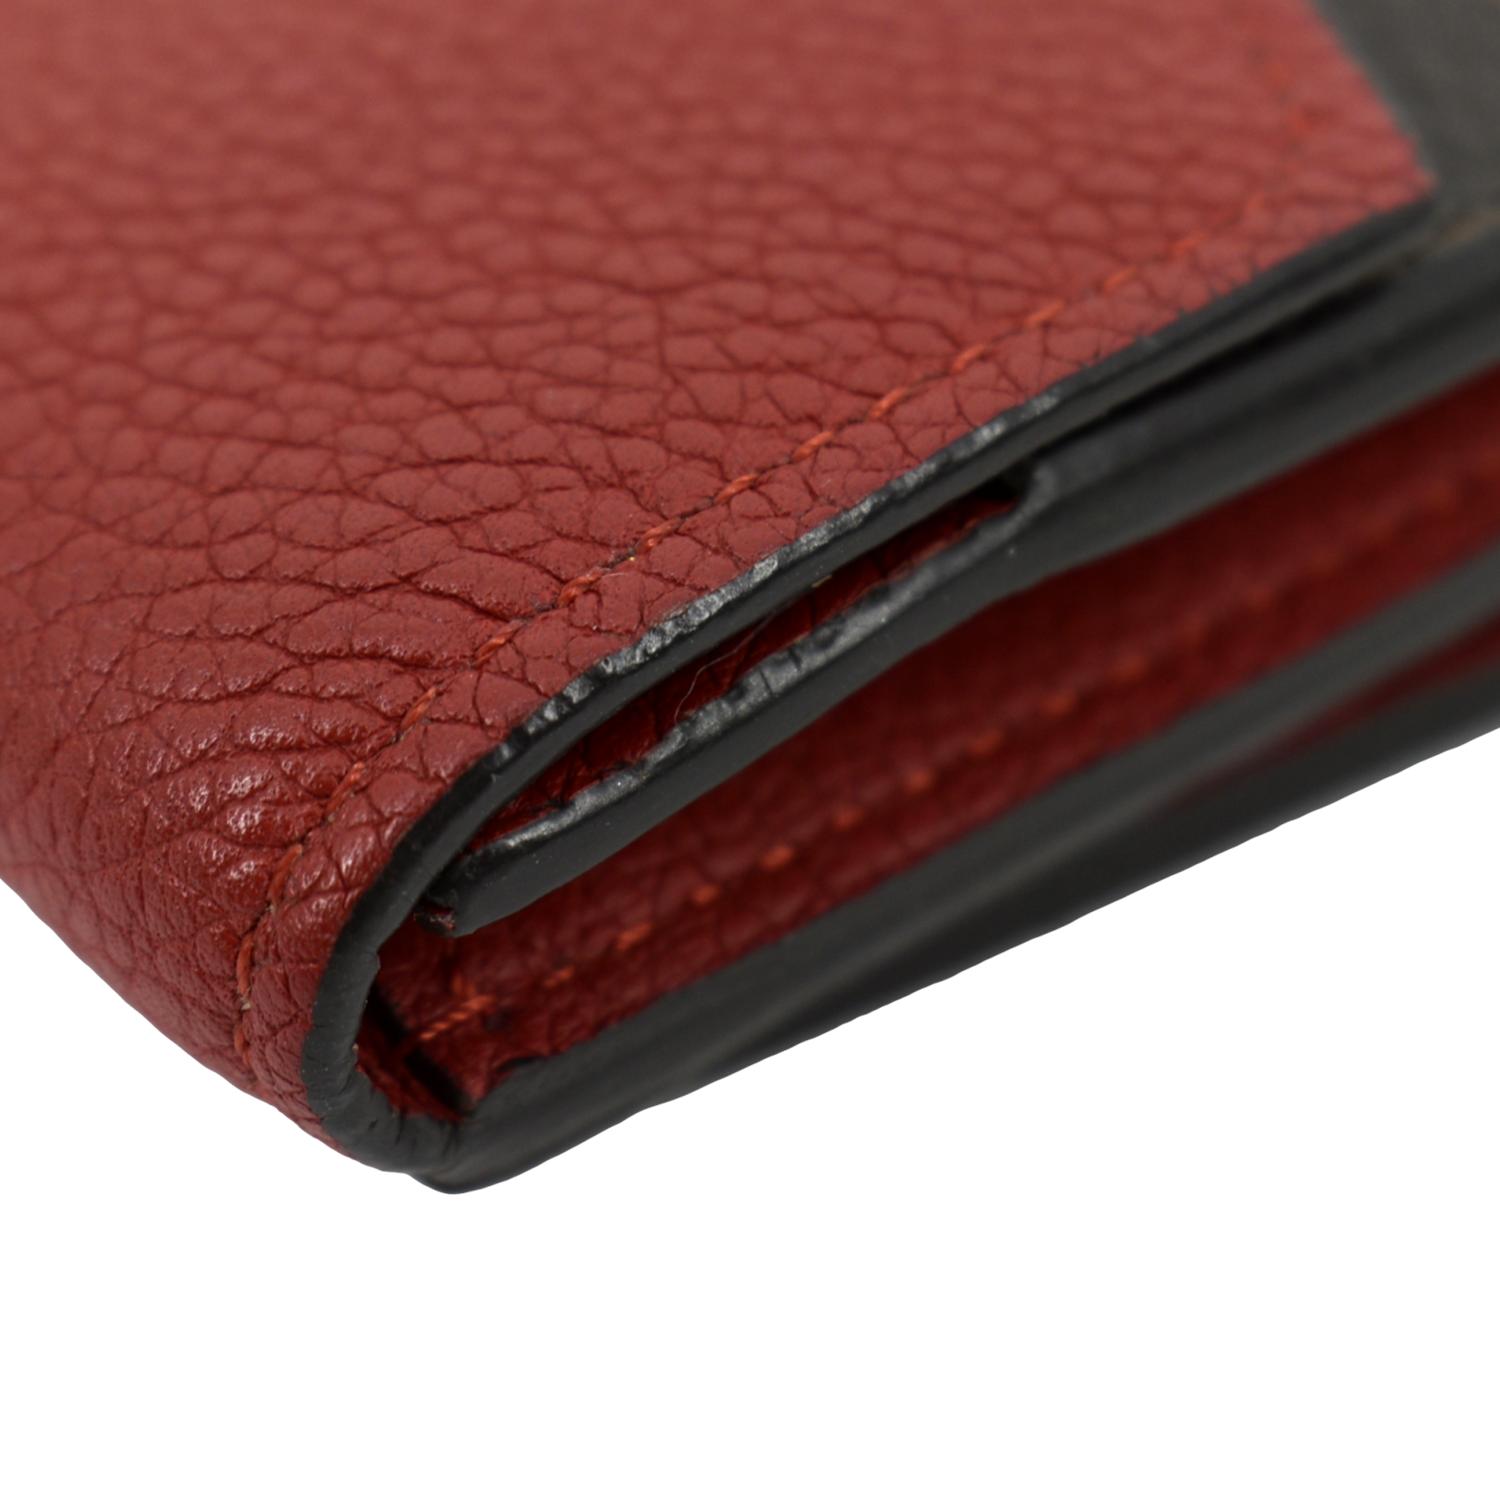 100% Authentic Louis Vuitton Bifold Compact Monogram Wallet